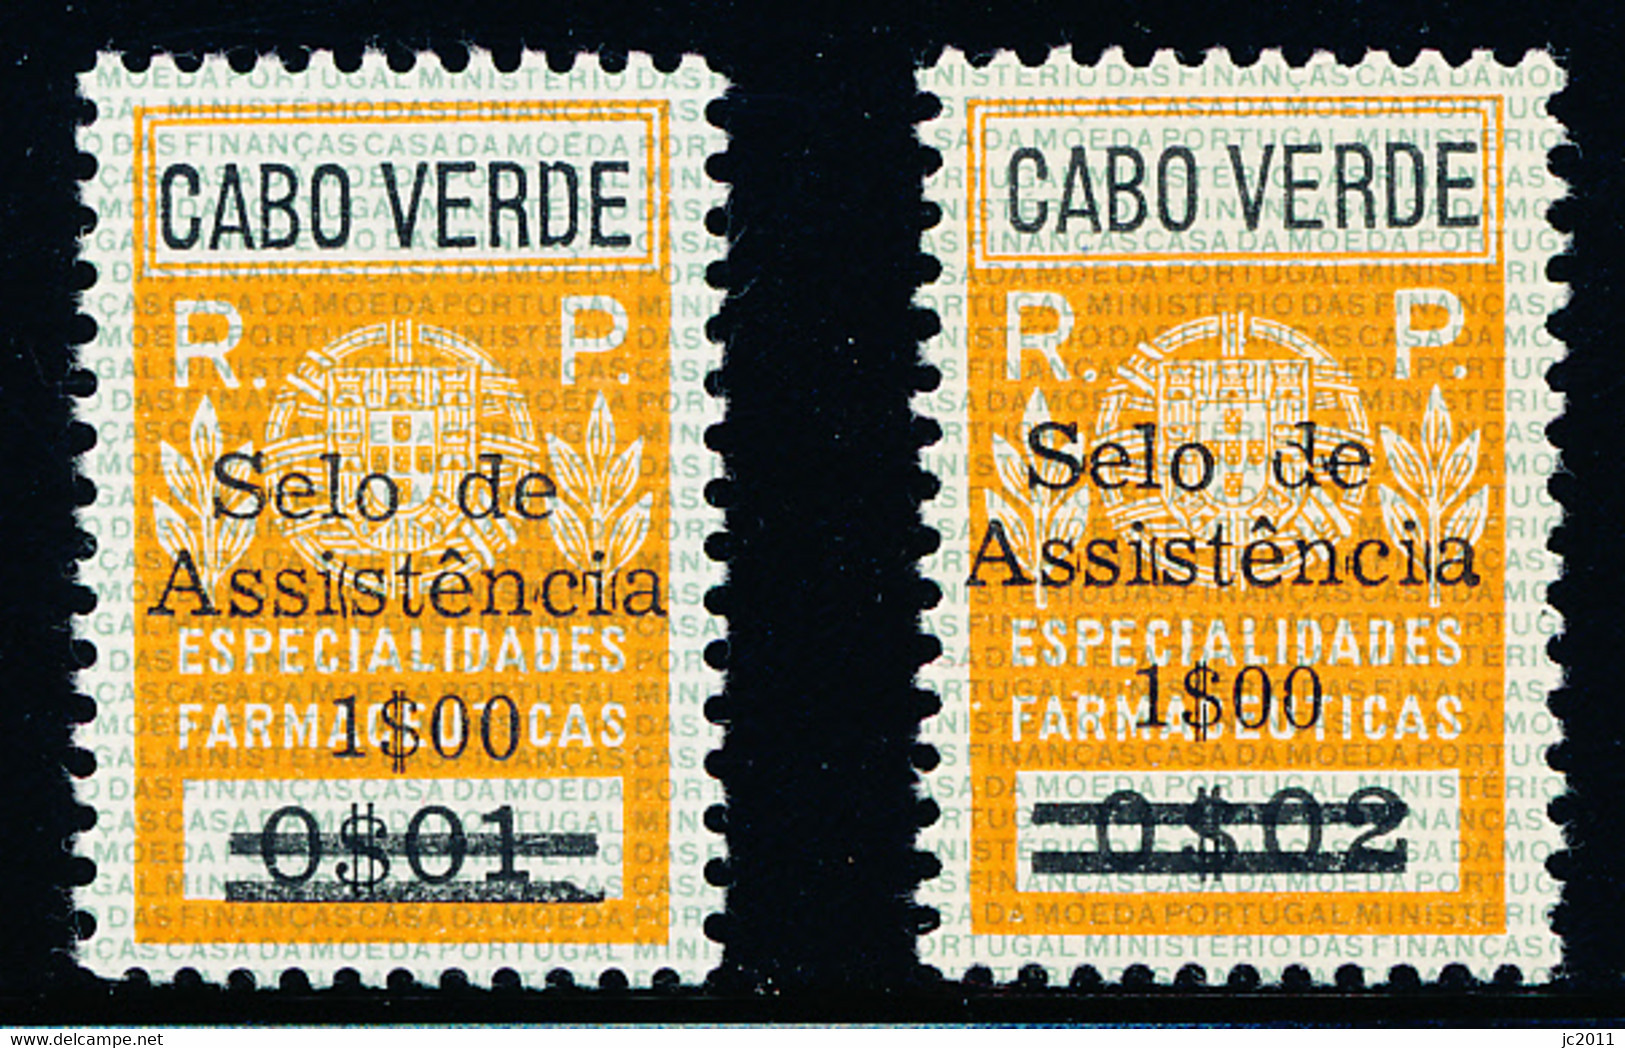 Cabo Verde - 1967 - Charaty Tax / Especialidades Farmacêuticas - MNH - Kapverdische Inseln